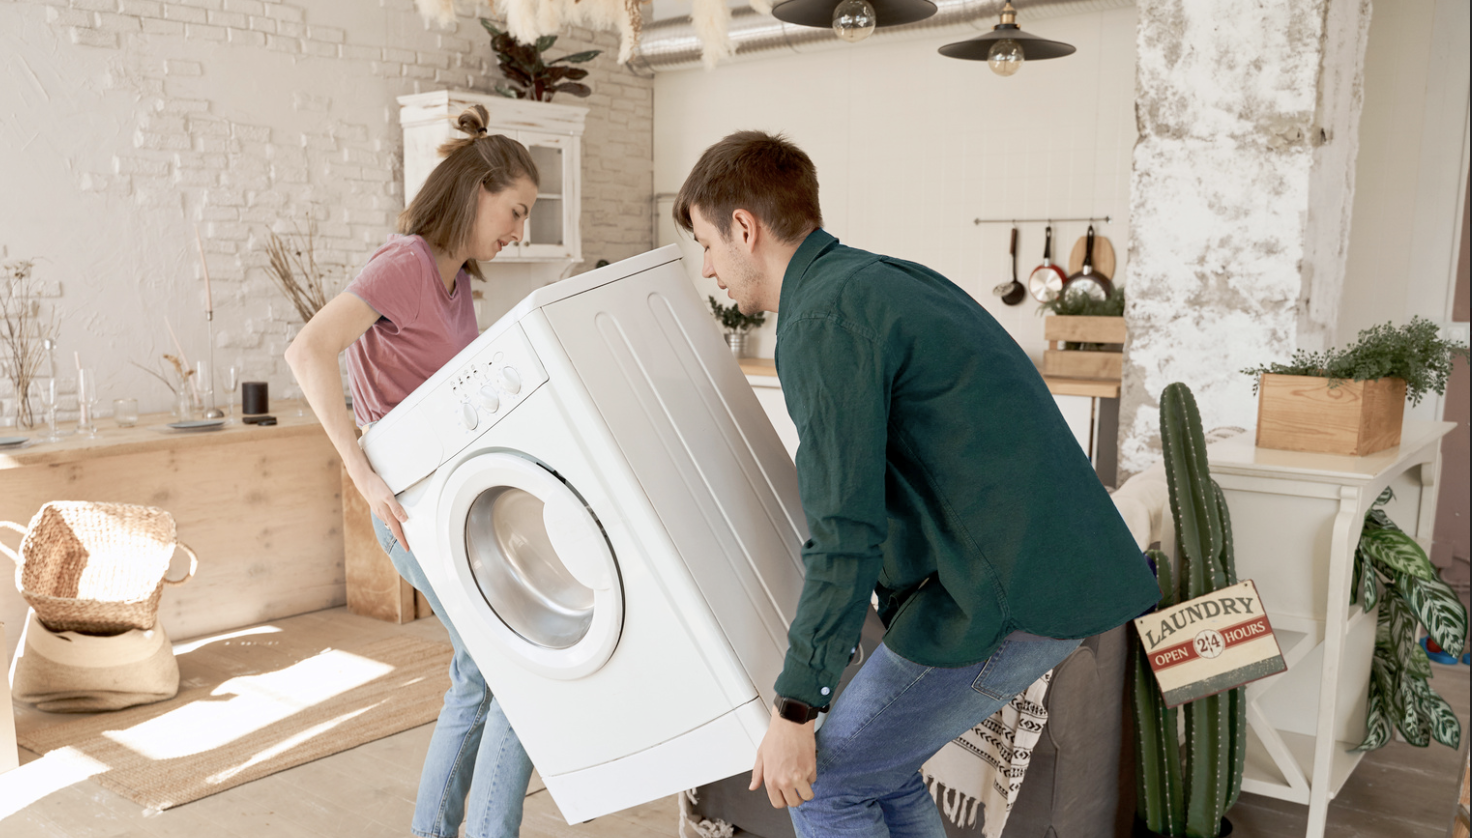 Déménager malin : installer son lave-linge comme un pro - Murfy